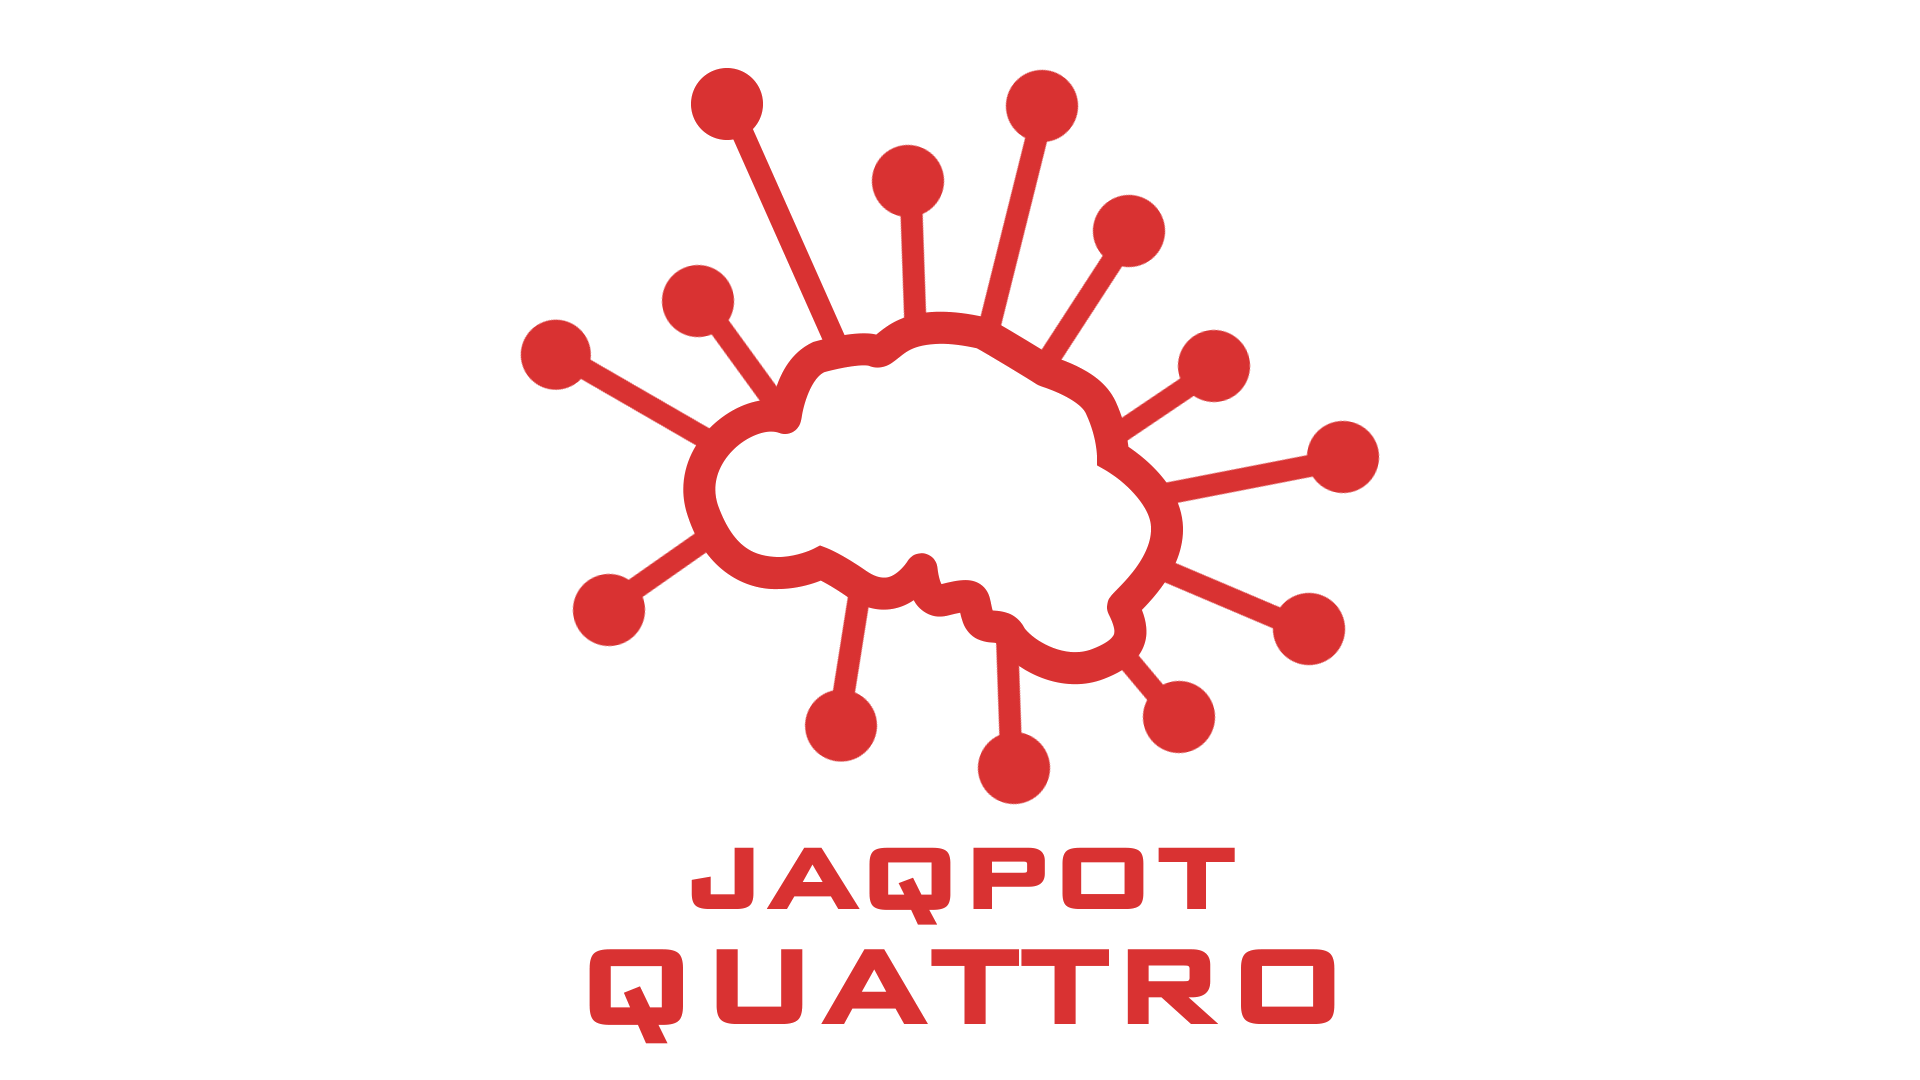 Jaqpot logo